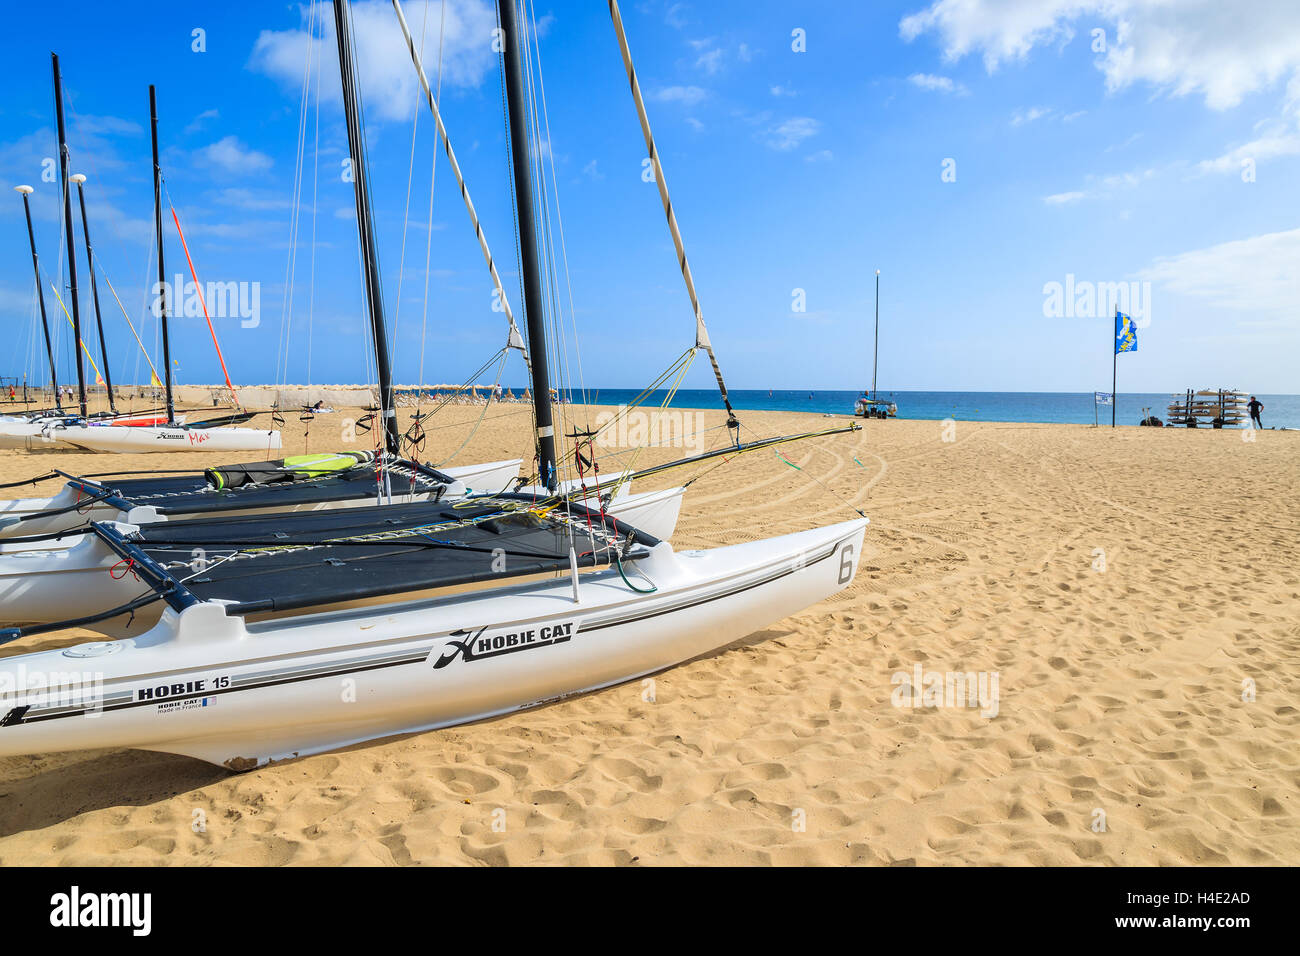 MORRO Jable Fuerteventura - Febbraio 7, 2014: catamarano barche sulla spiaggia di Morro Jable. Si tratta di un popolare resort per vacanze sull isola di Fuerteventura. Foto Stock